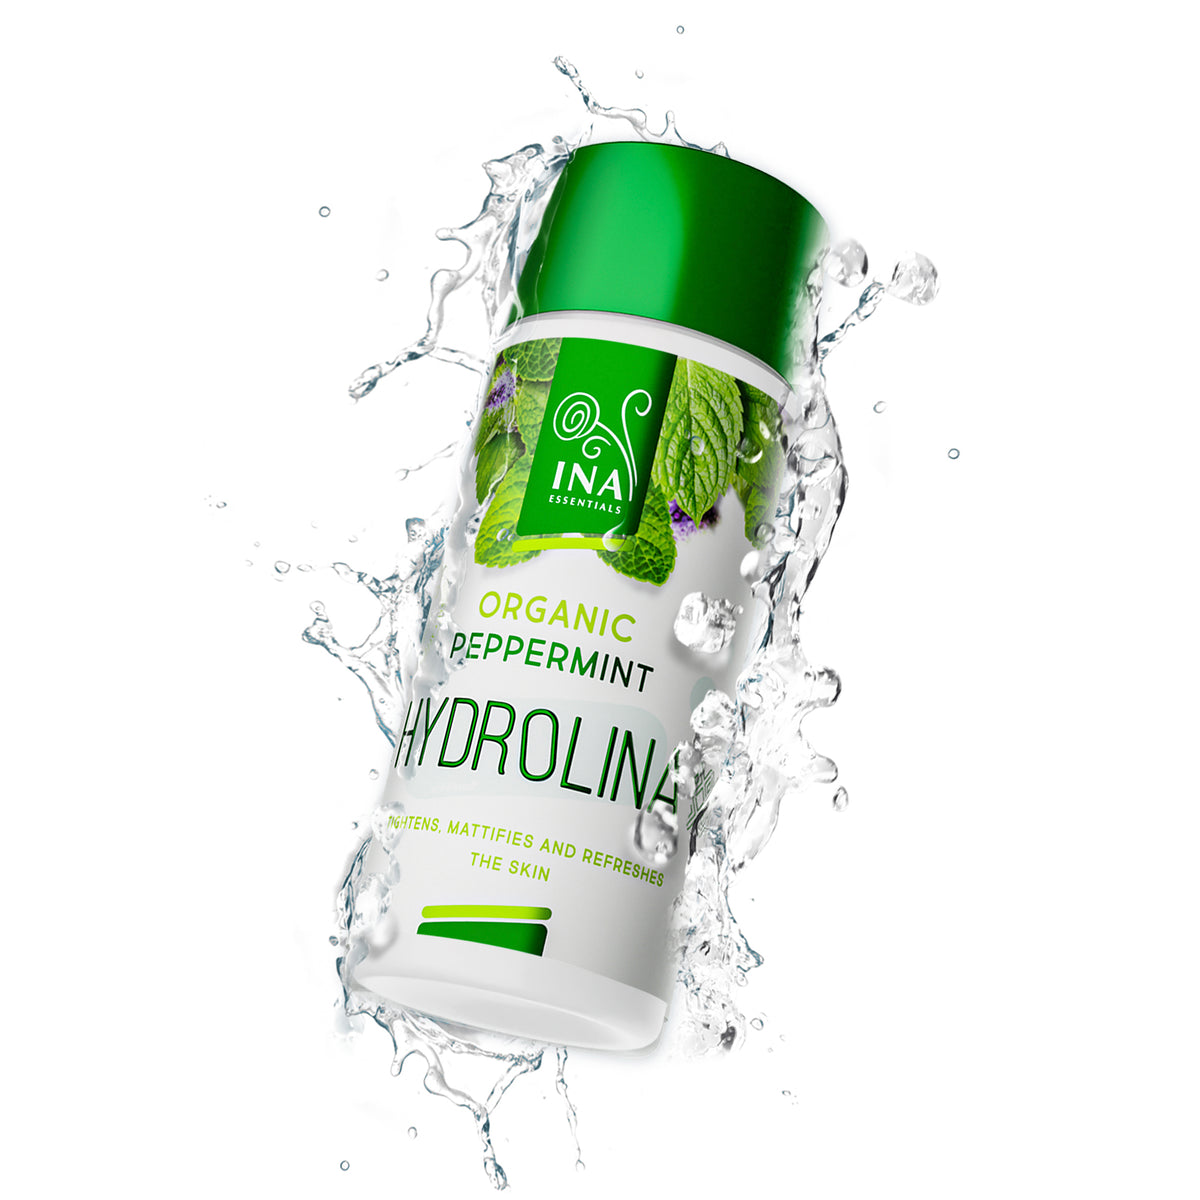 Biologisch pepermuntwater - Hydrolina voor versteviging en mattering van de huid (150 ml)